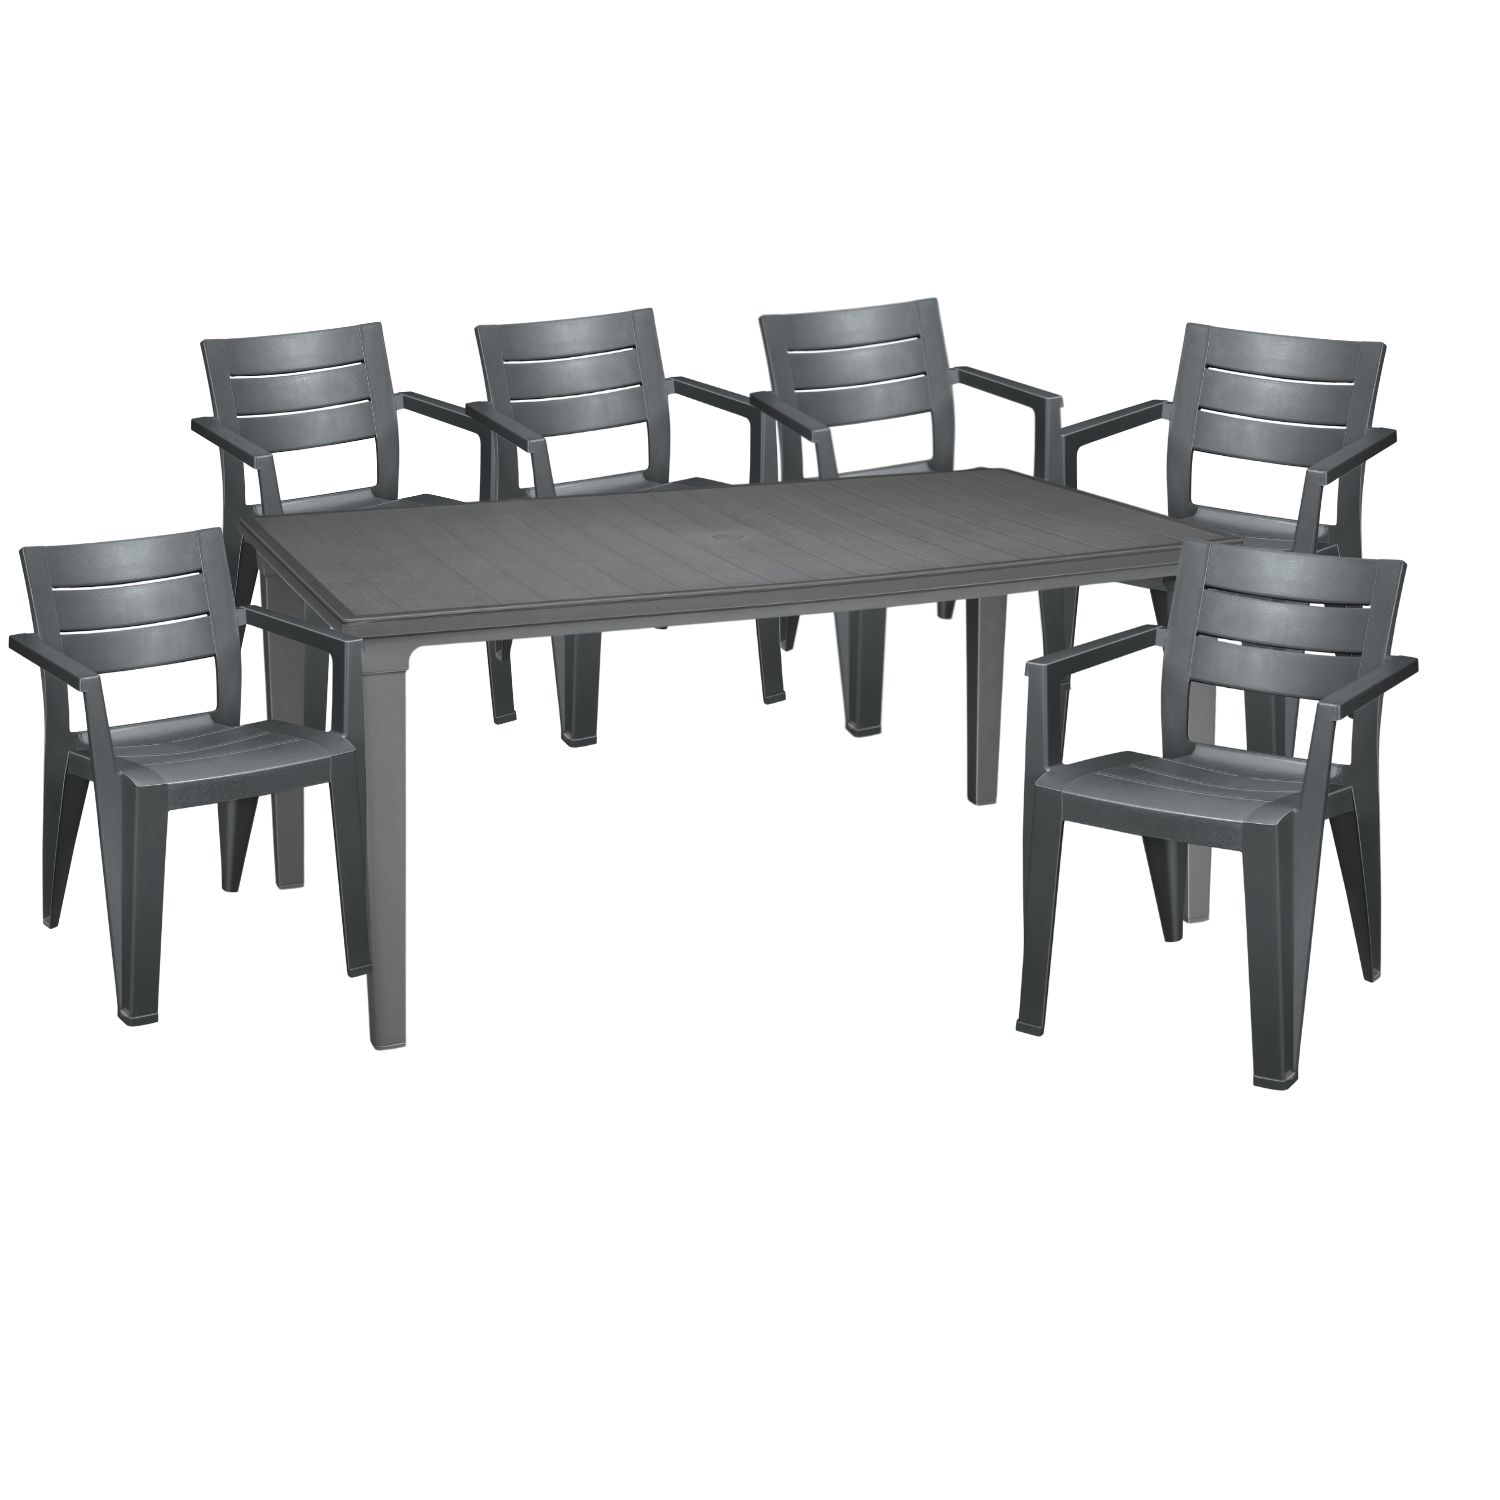 Комплект мебели для дачи Elfplast PALERMO RT0273 стол обеденный на 6 персон + 6 стульев